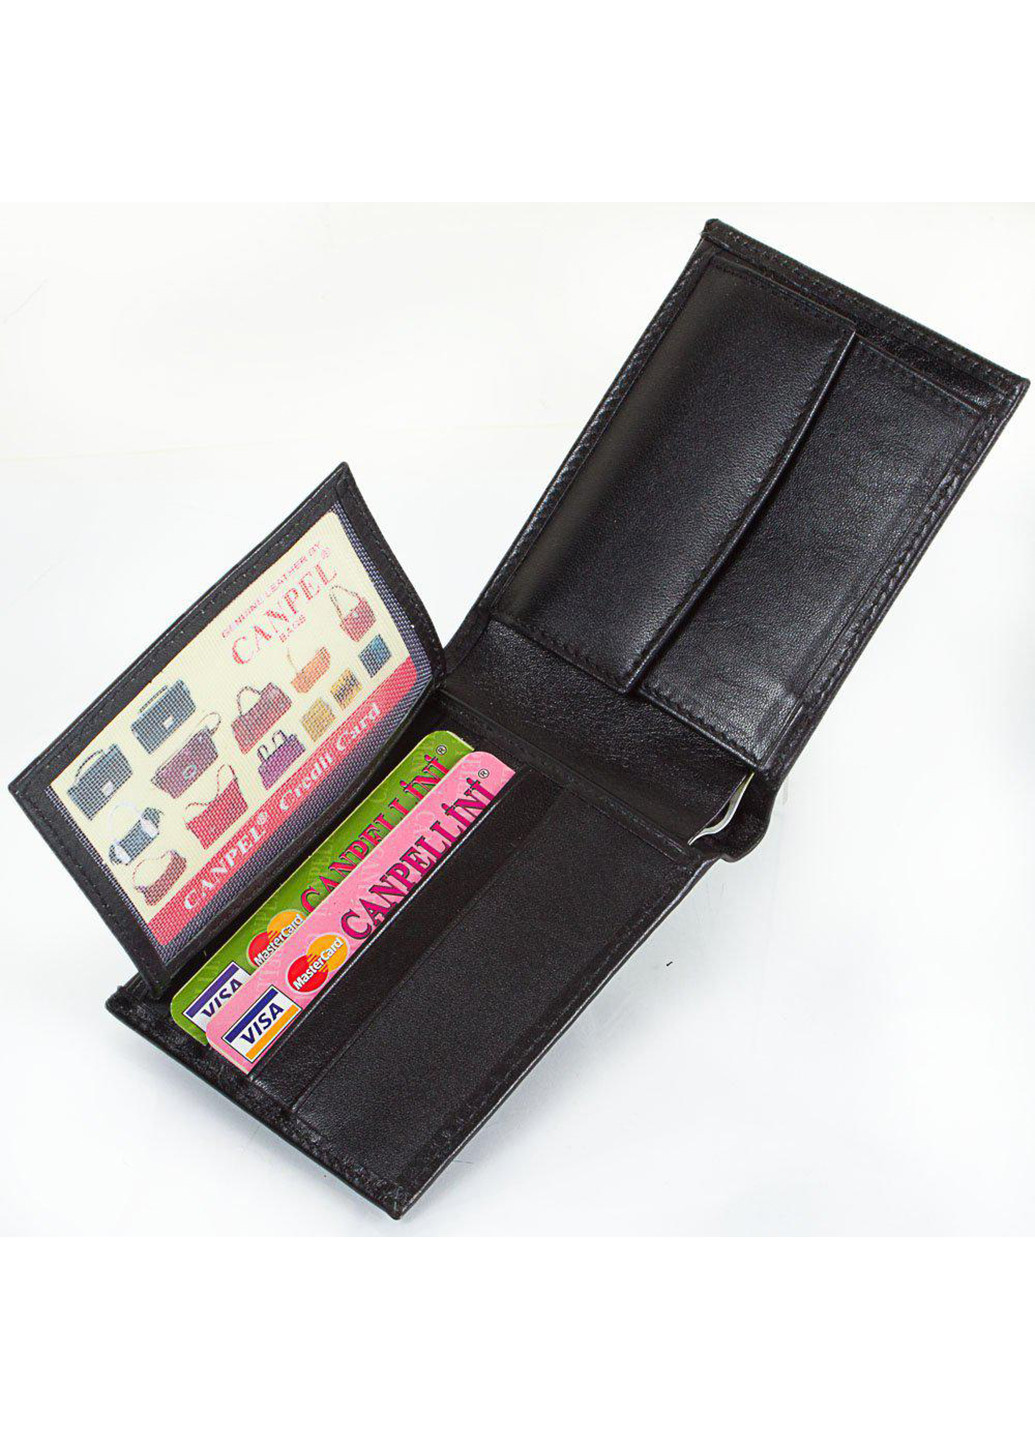 Чоловічий шкіряний гаманець 11х8,5х2,5 см Canpellini (252128115)